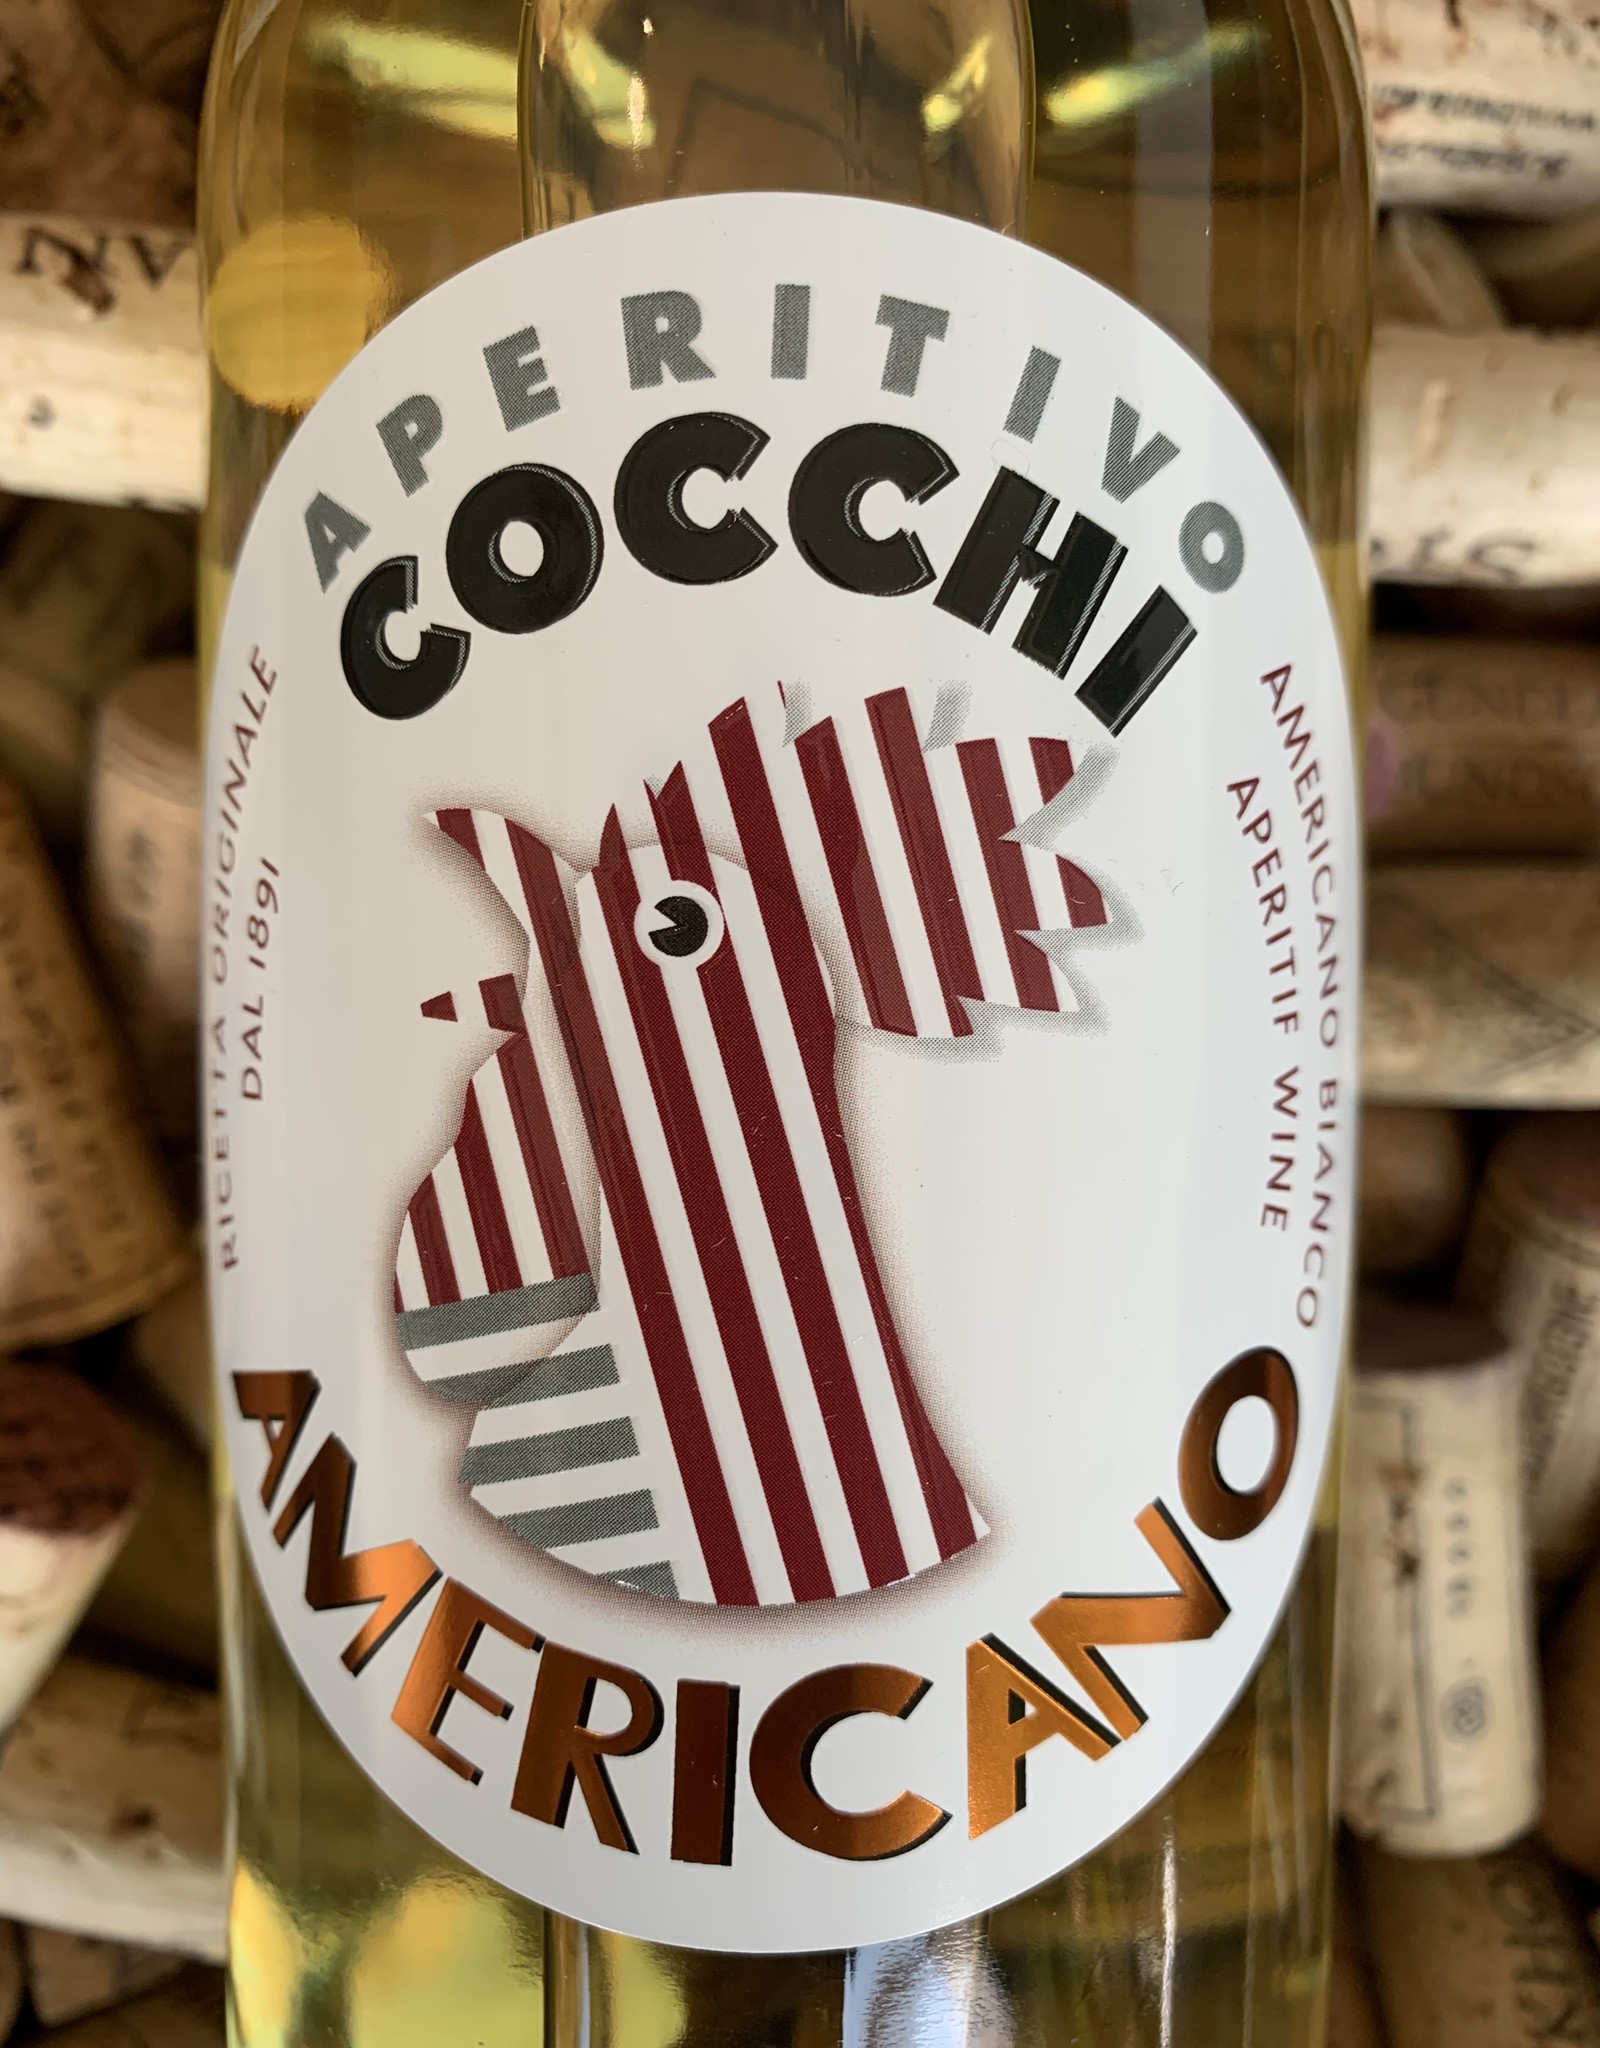 Cocchi Cocchi Apertivo Americano Bianco Italy